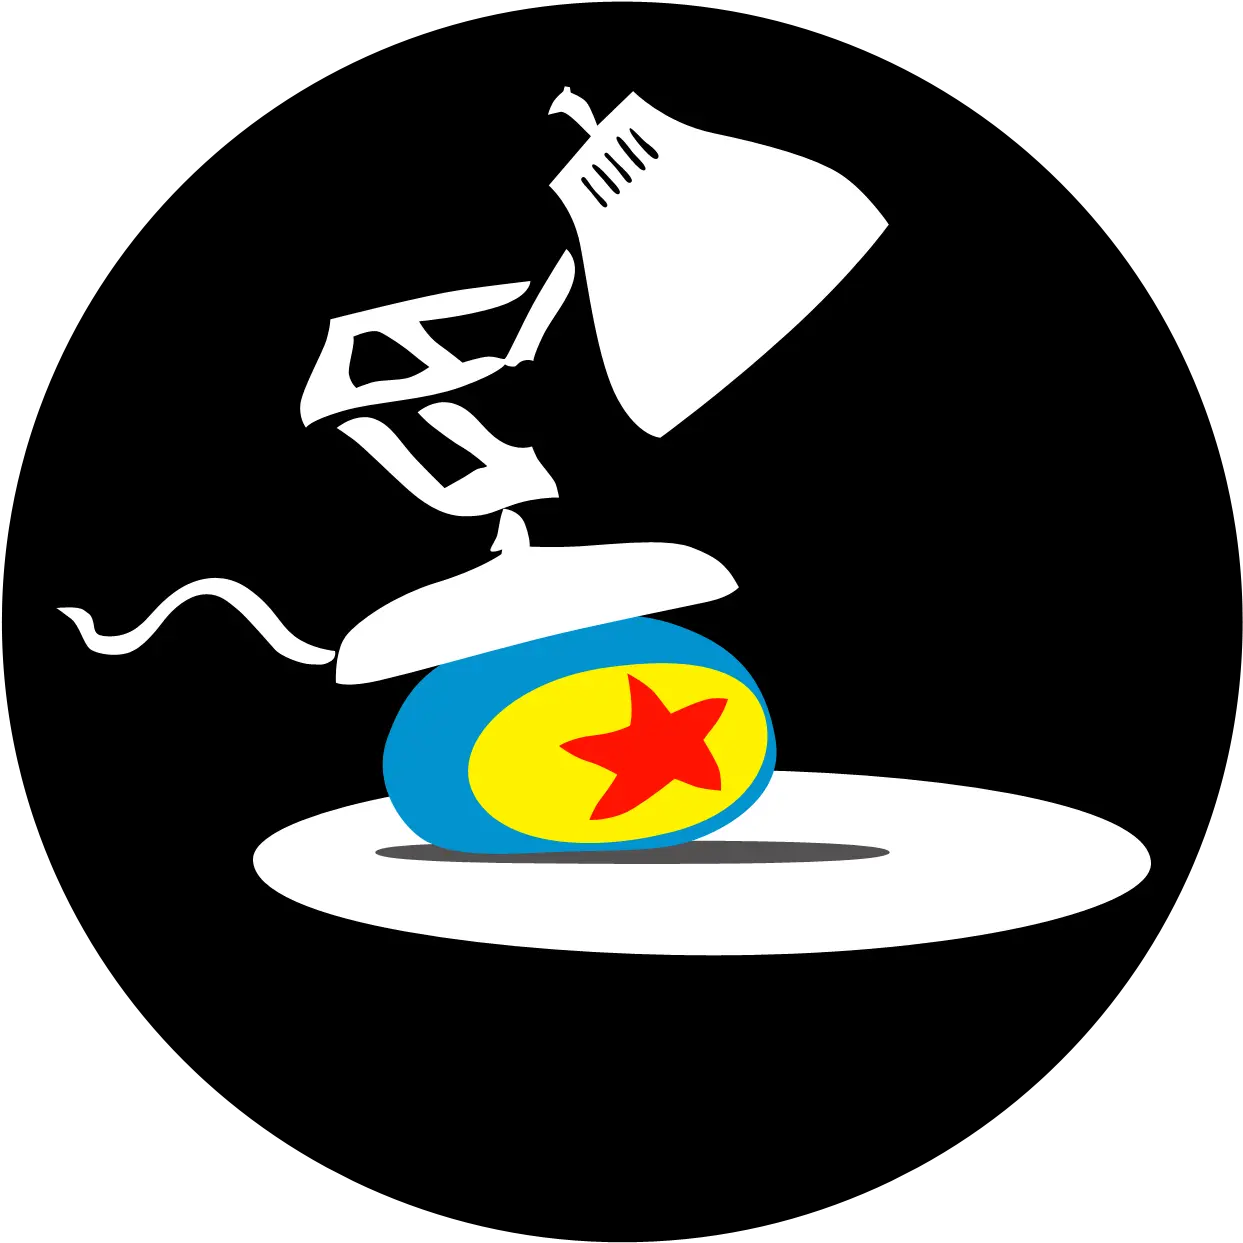 Luxo Jr Pixar Short Films Collection 2095x1870 Png Logo Pixar Lamp And Ball Pixar Logo Png